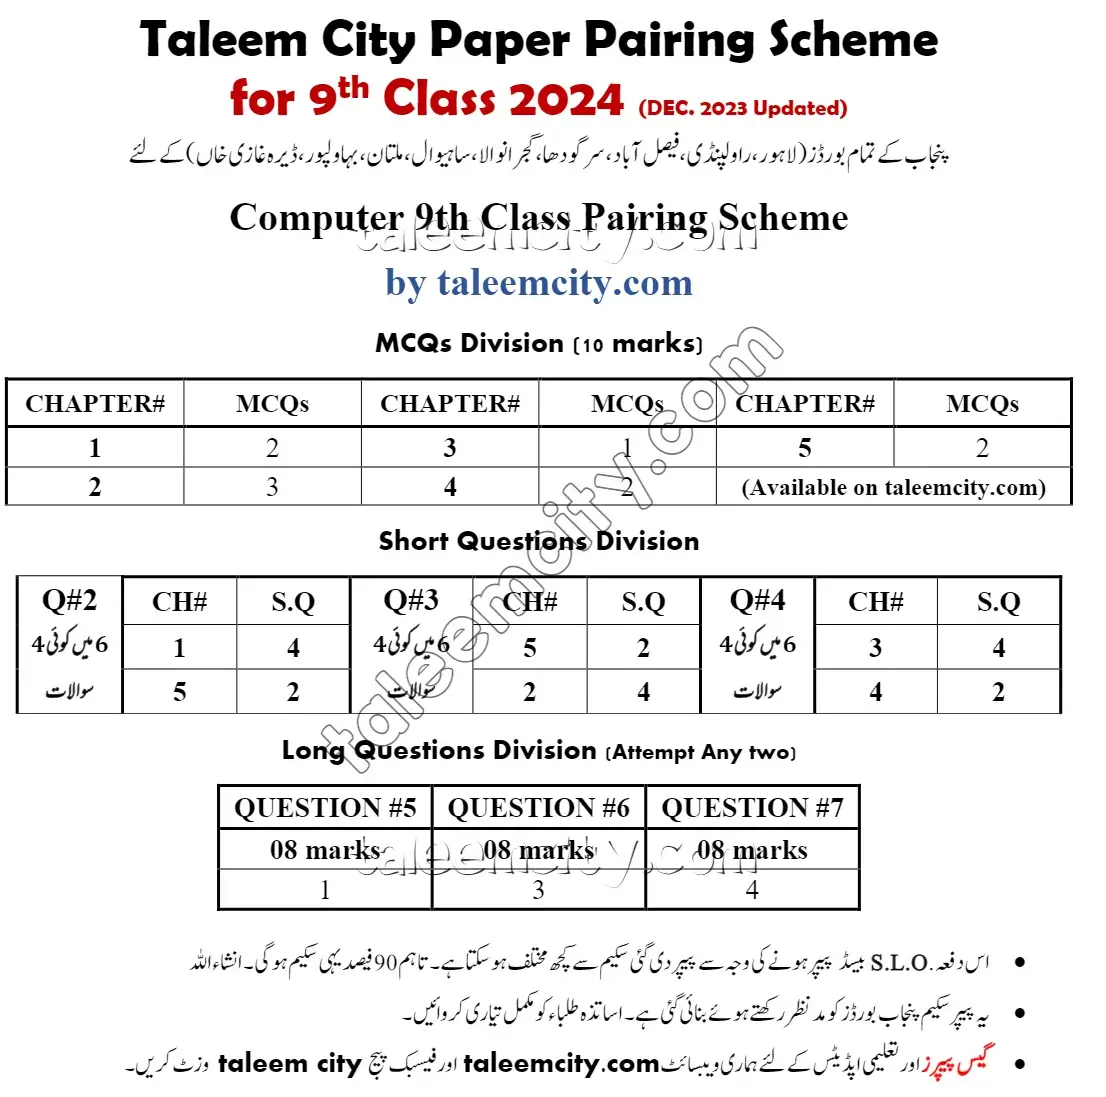 9th Class Computer Pairing Scheme 2024.webp